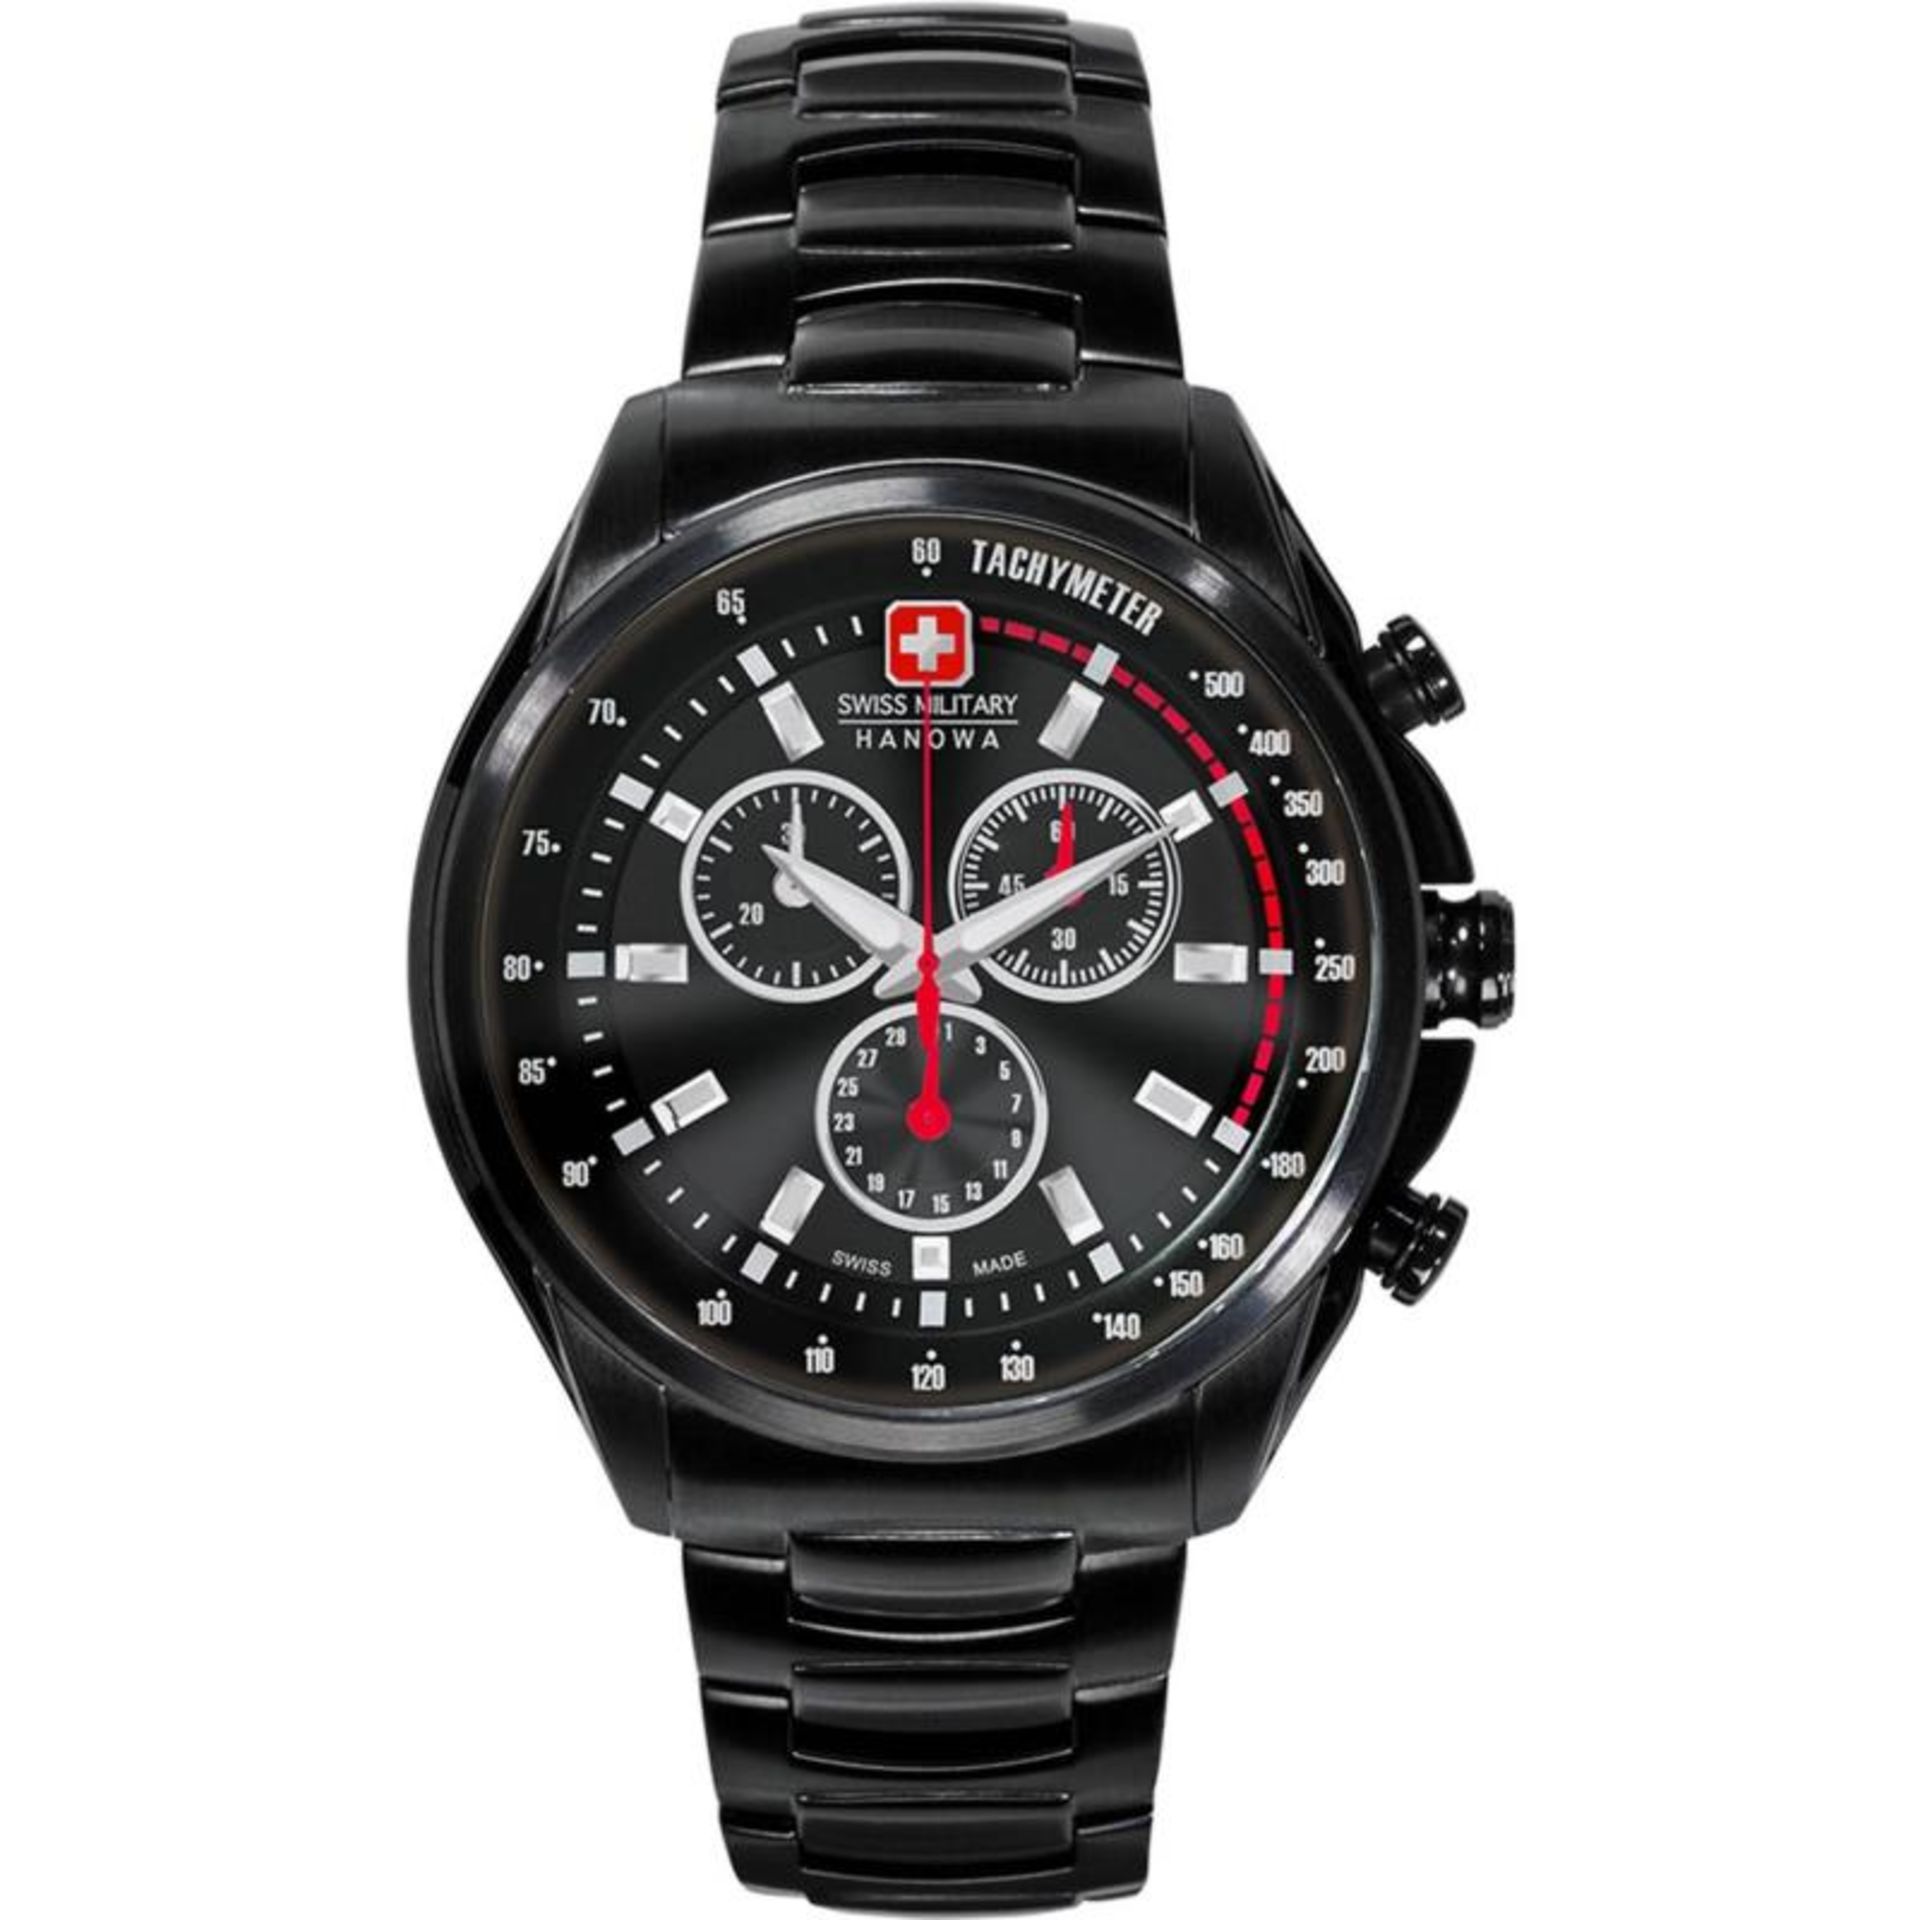 Brand New Swiss Military 06-5274.13.007 Designer Watch RRP £549